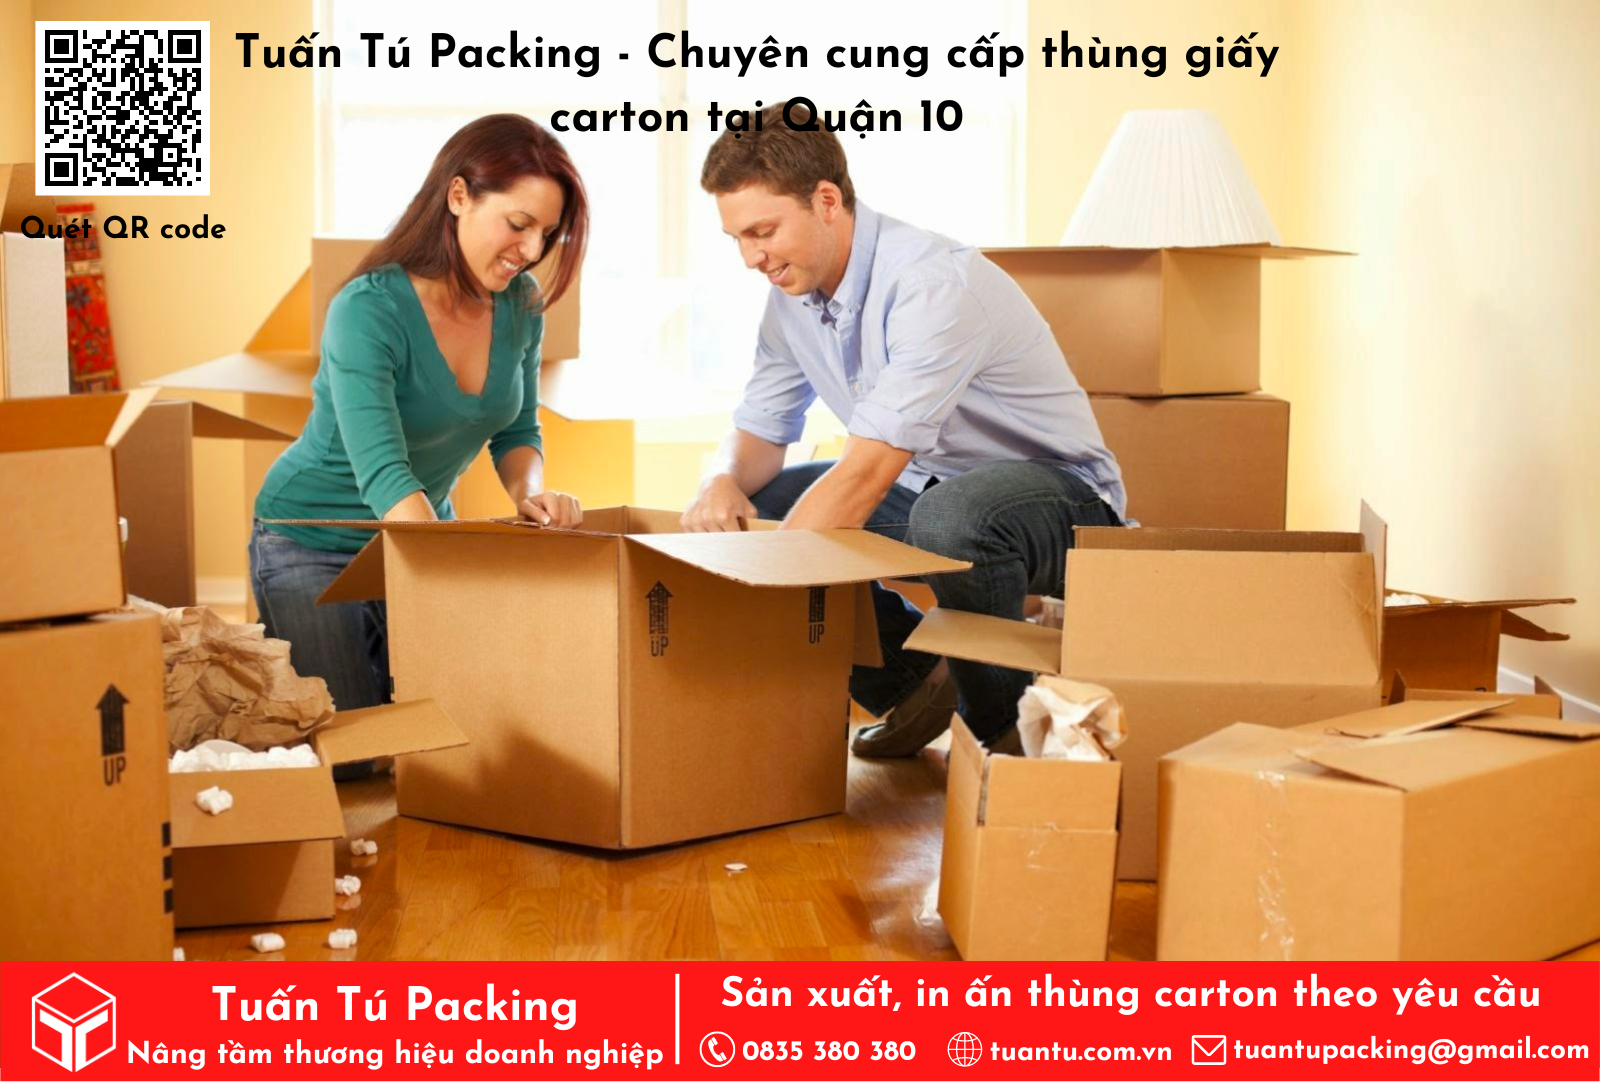 Tuấn Tú Packing - Chuyên cung cấp thùng carton chuyển nhà tại quận 10 